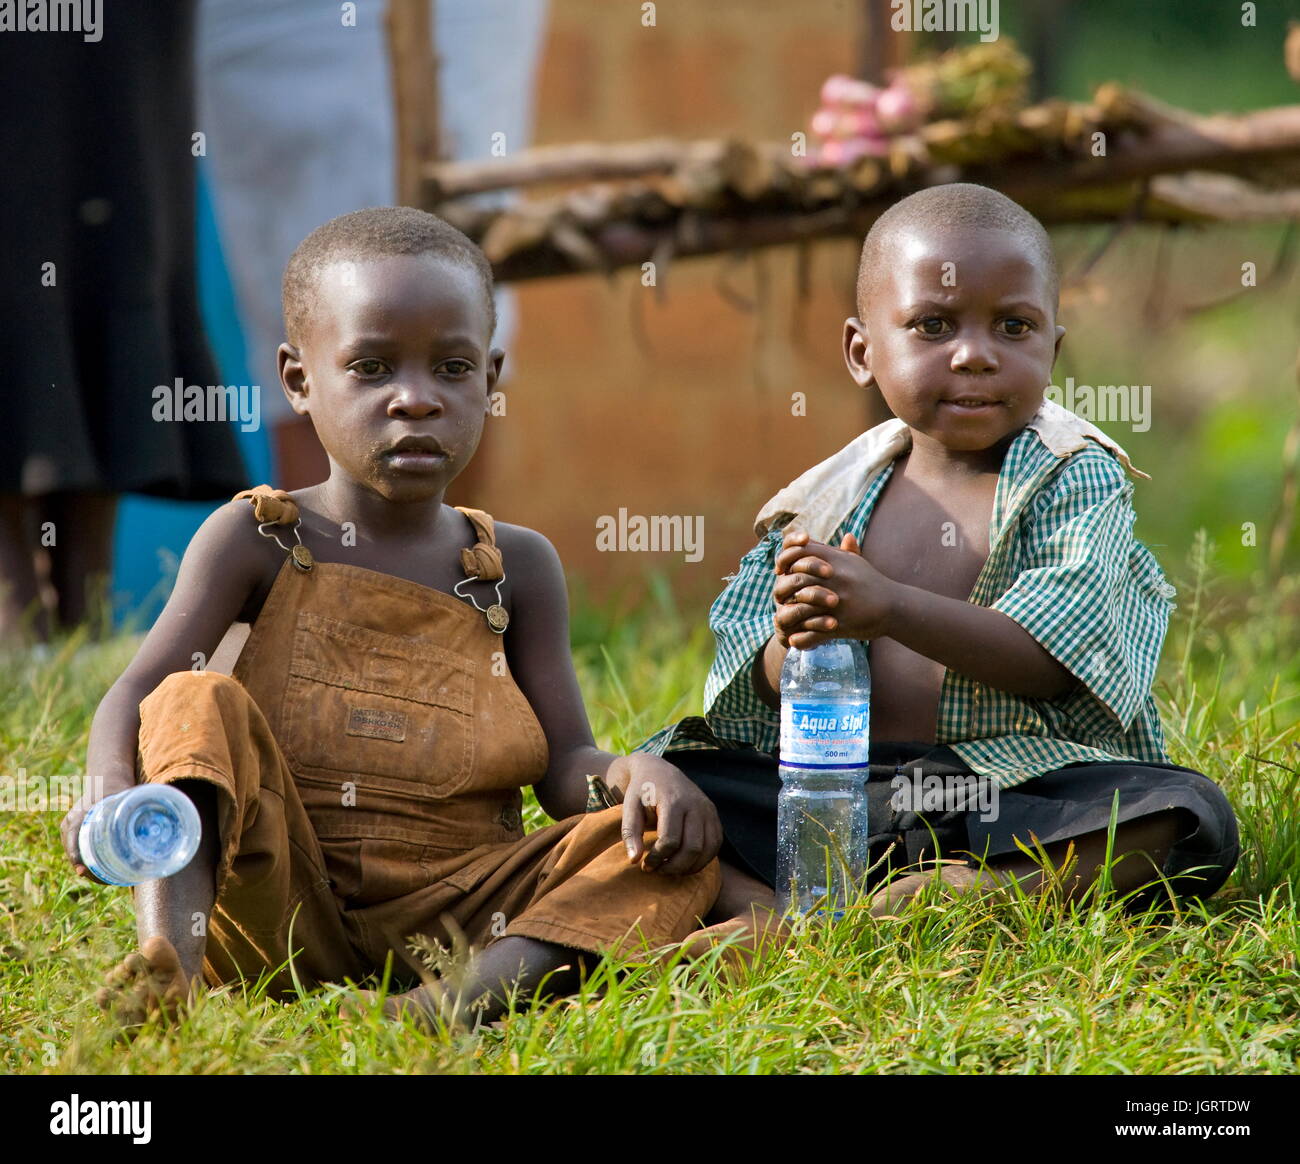 KISORO, UGANDA, AFRICA - DECEMBER 12, 2008: Kisoro. Uganda. Africa. Village children are sitting at the roadside.12 December, 2008. Kisoro. Uganda. Stock Photo